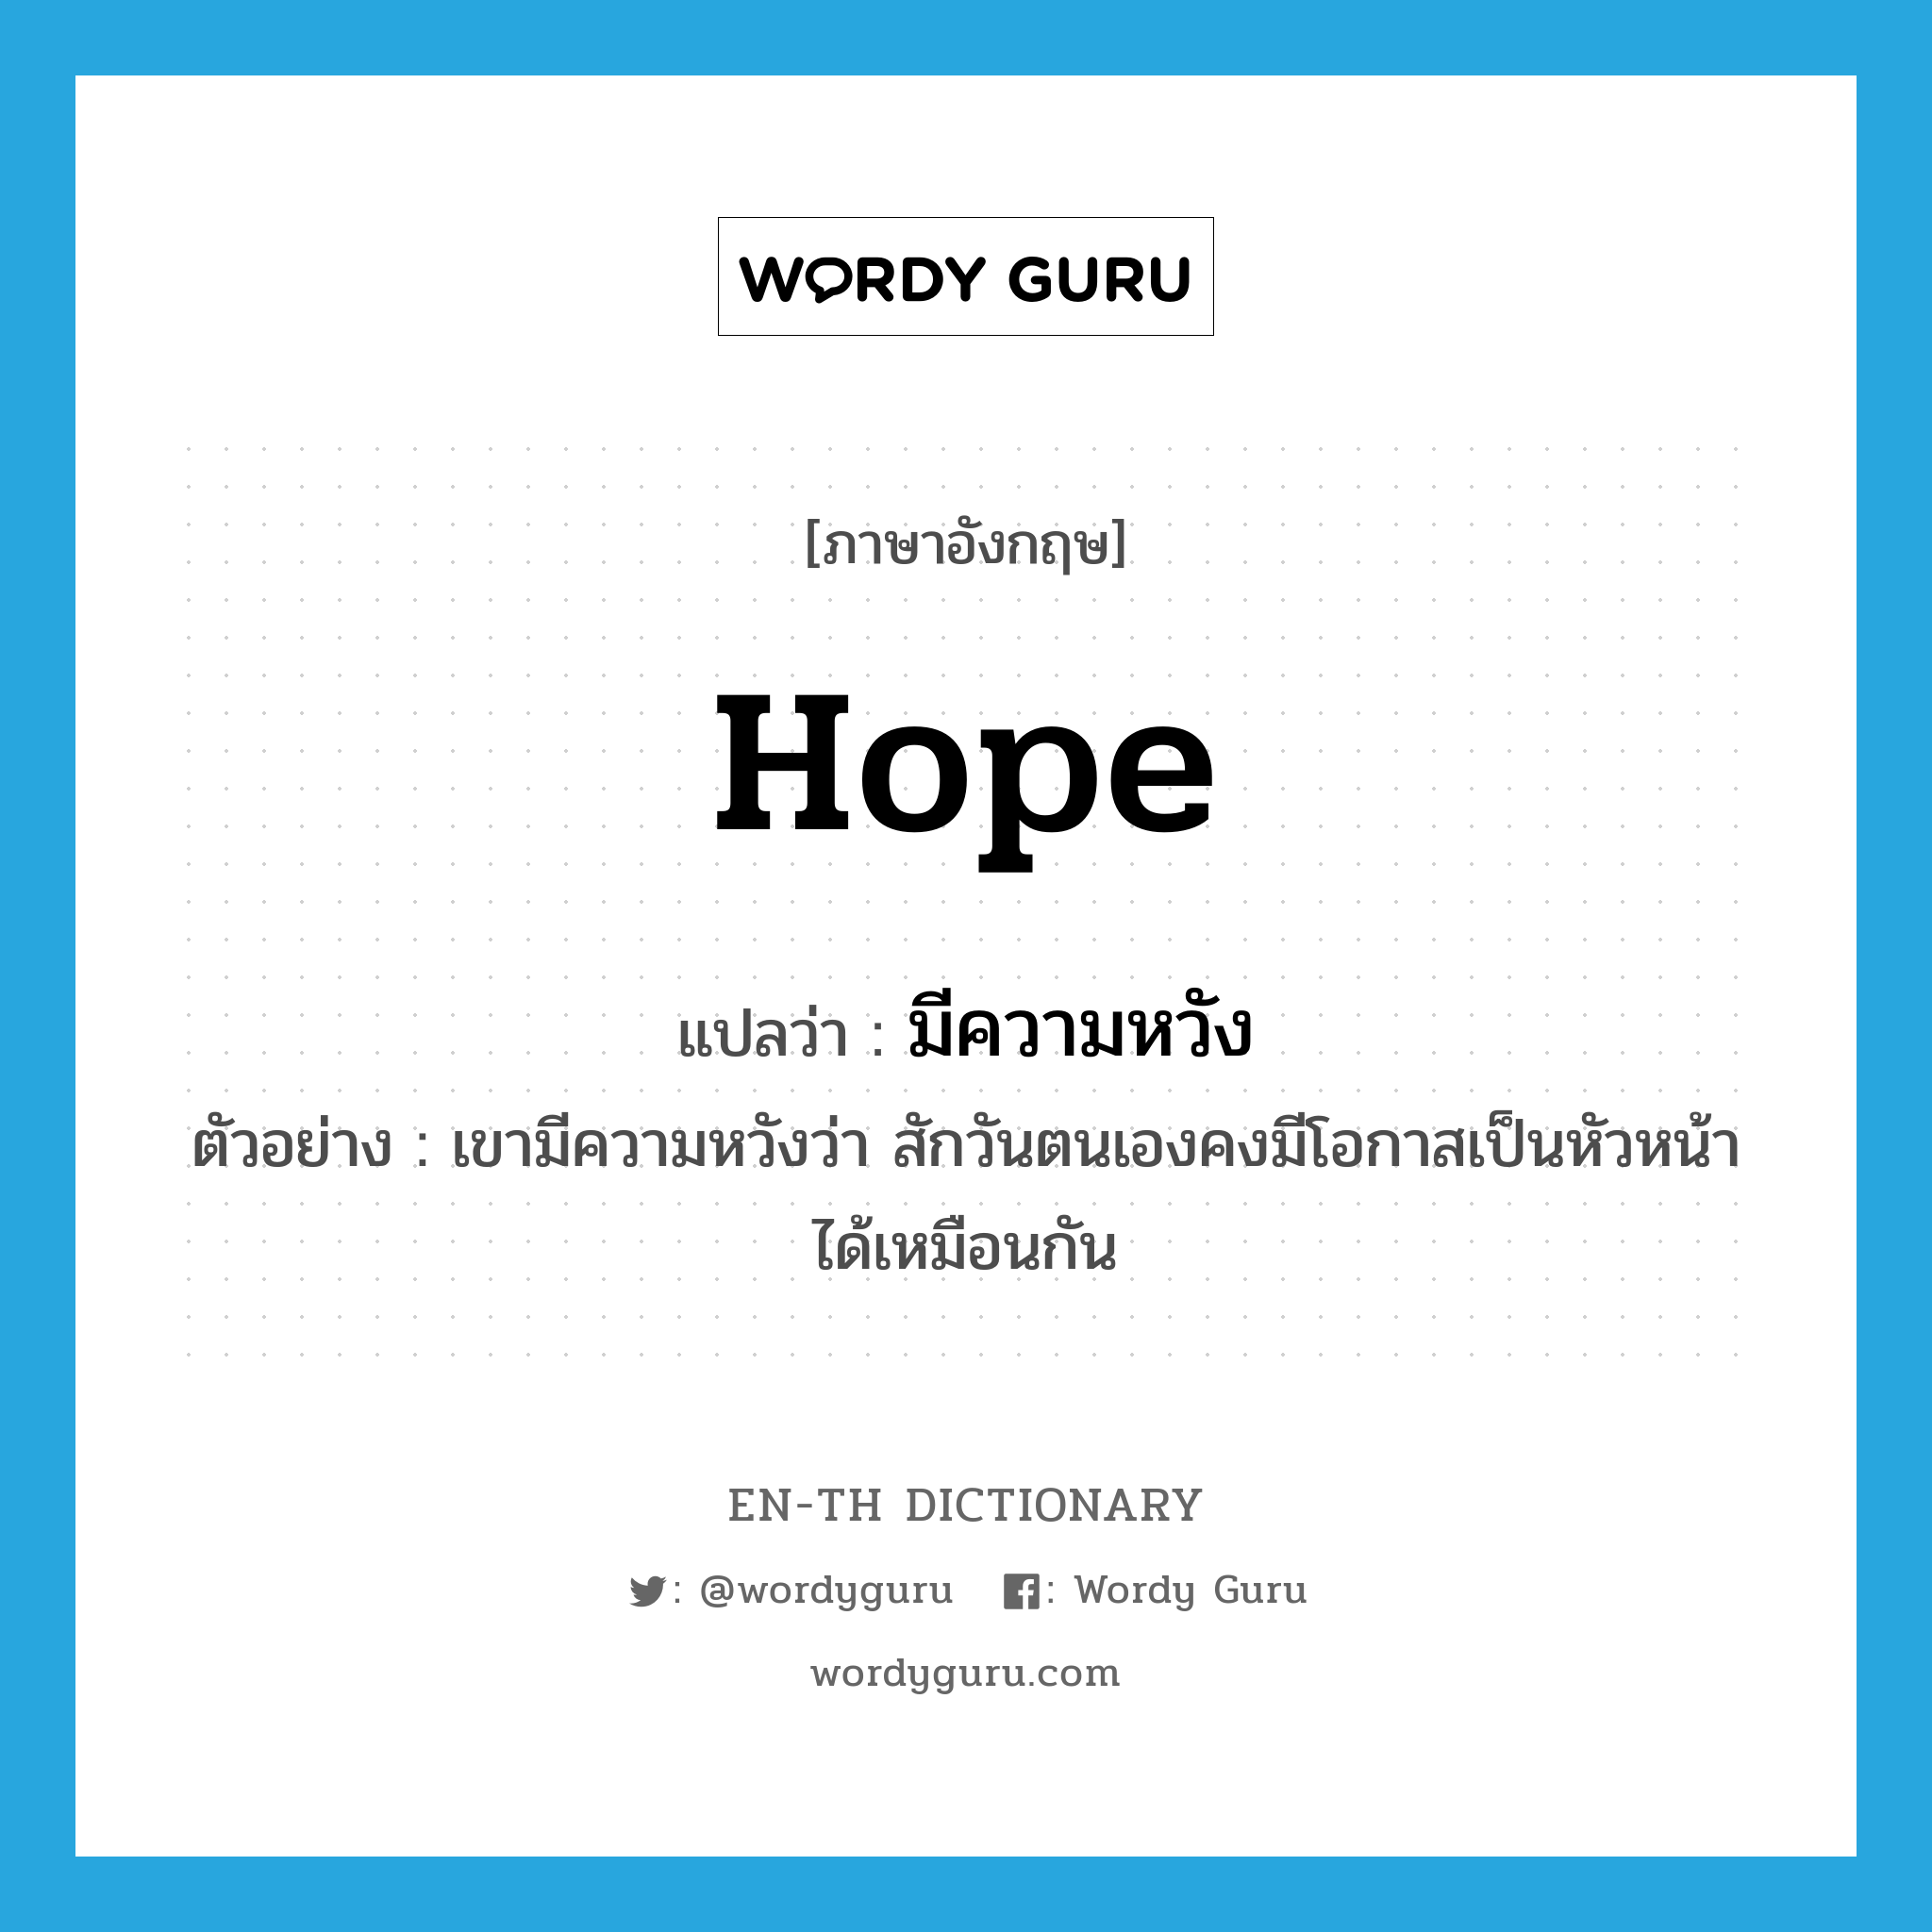 มีความหวัง ภาษาอังกฤษ?, คำศัพท์ภาษาอังกฤษ มีความหวัง แปลว่า hope ประเภท V ตัวอย่าง เขามีความหวังว่า สักวันตนเองคงมีโอกาสเป็นหัวหน้าได้เหมือนกัน หมวด V